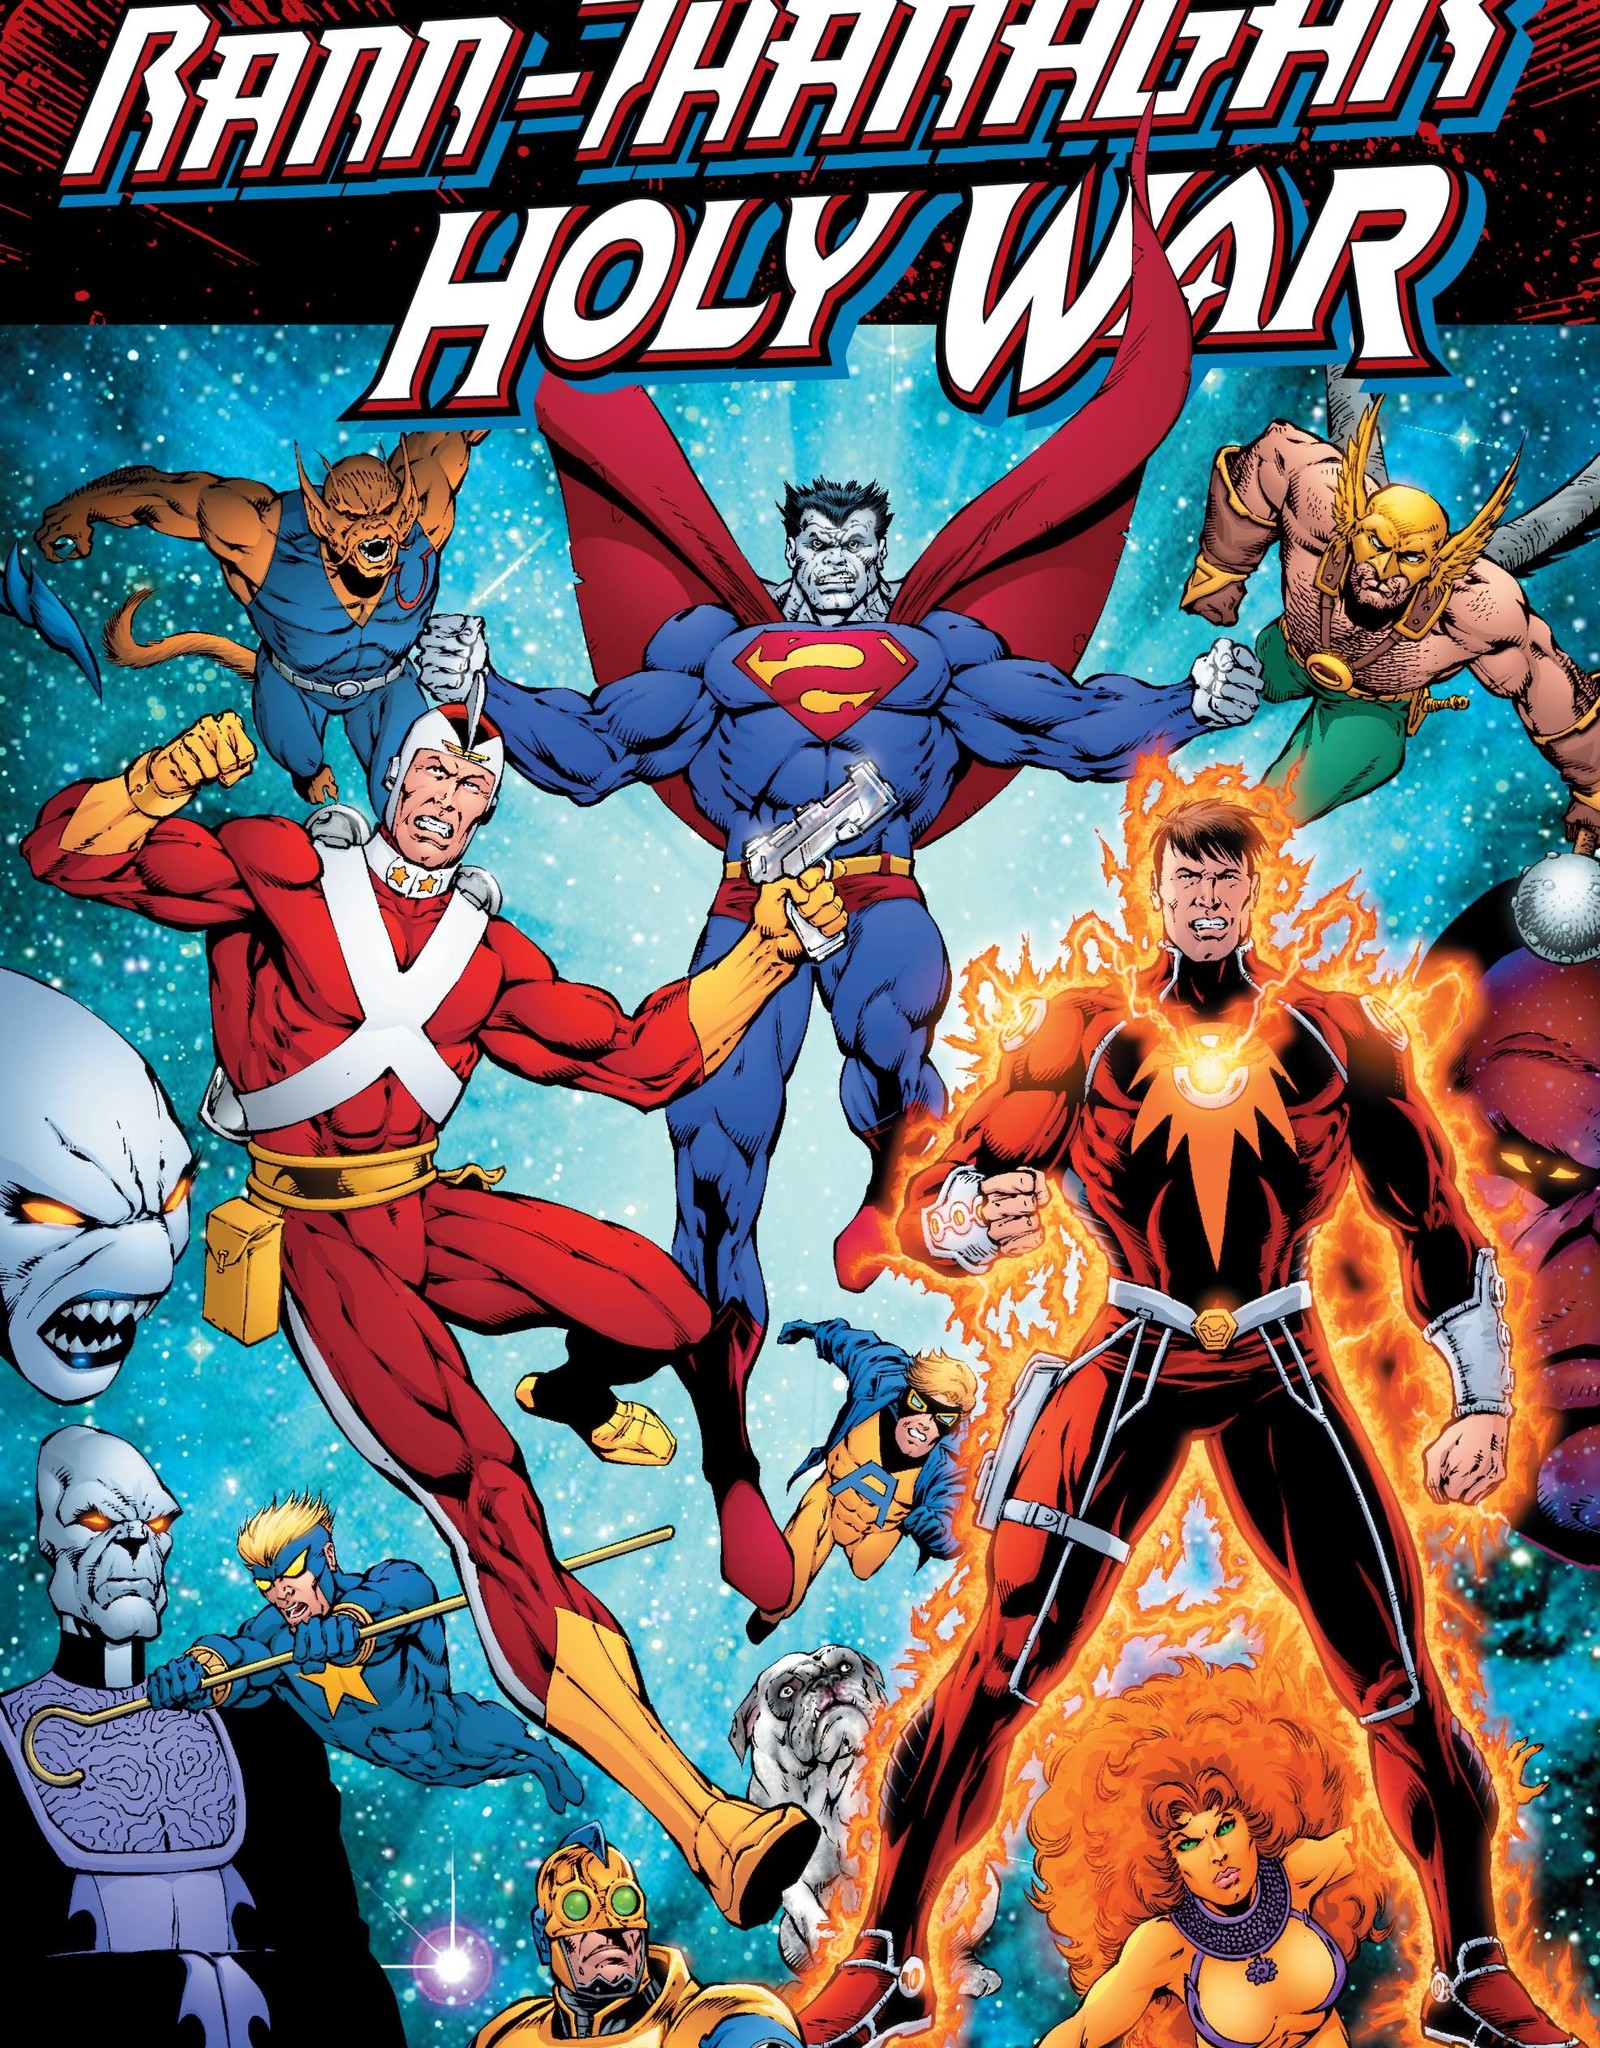 DC Comics Rann-Thanagar Holy War Volume 01